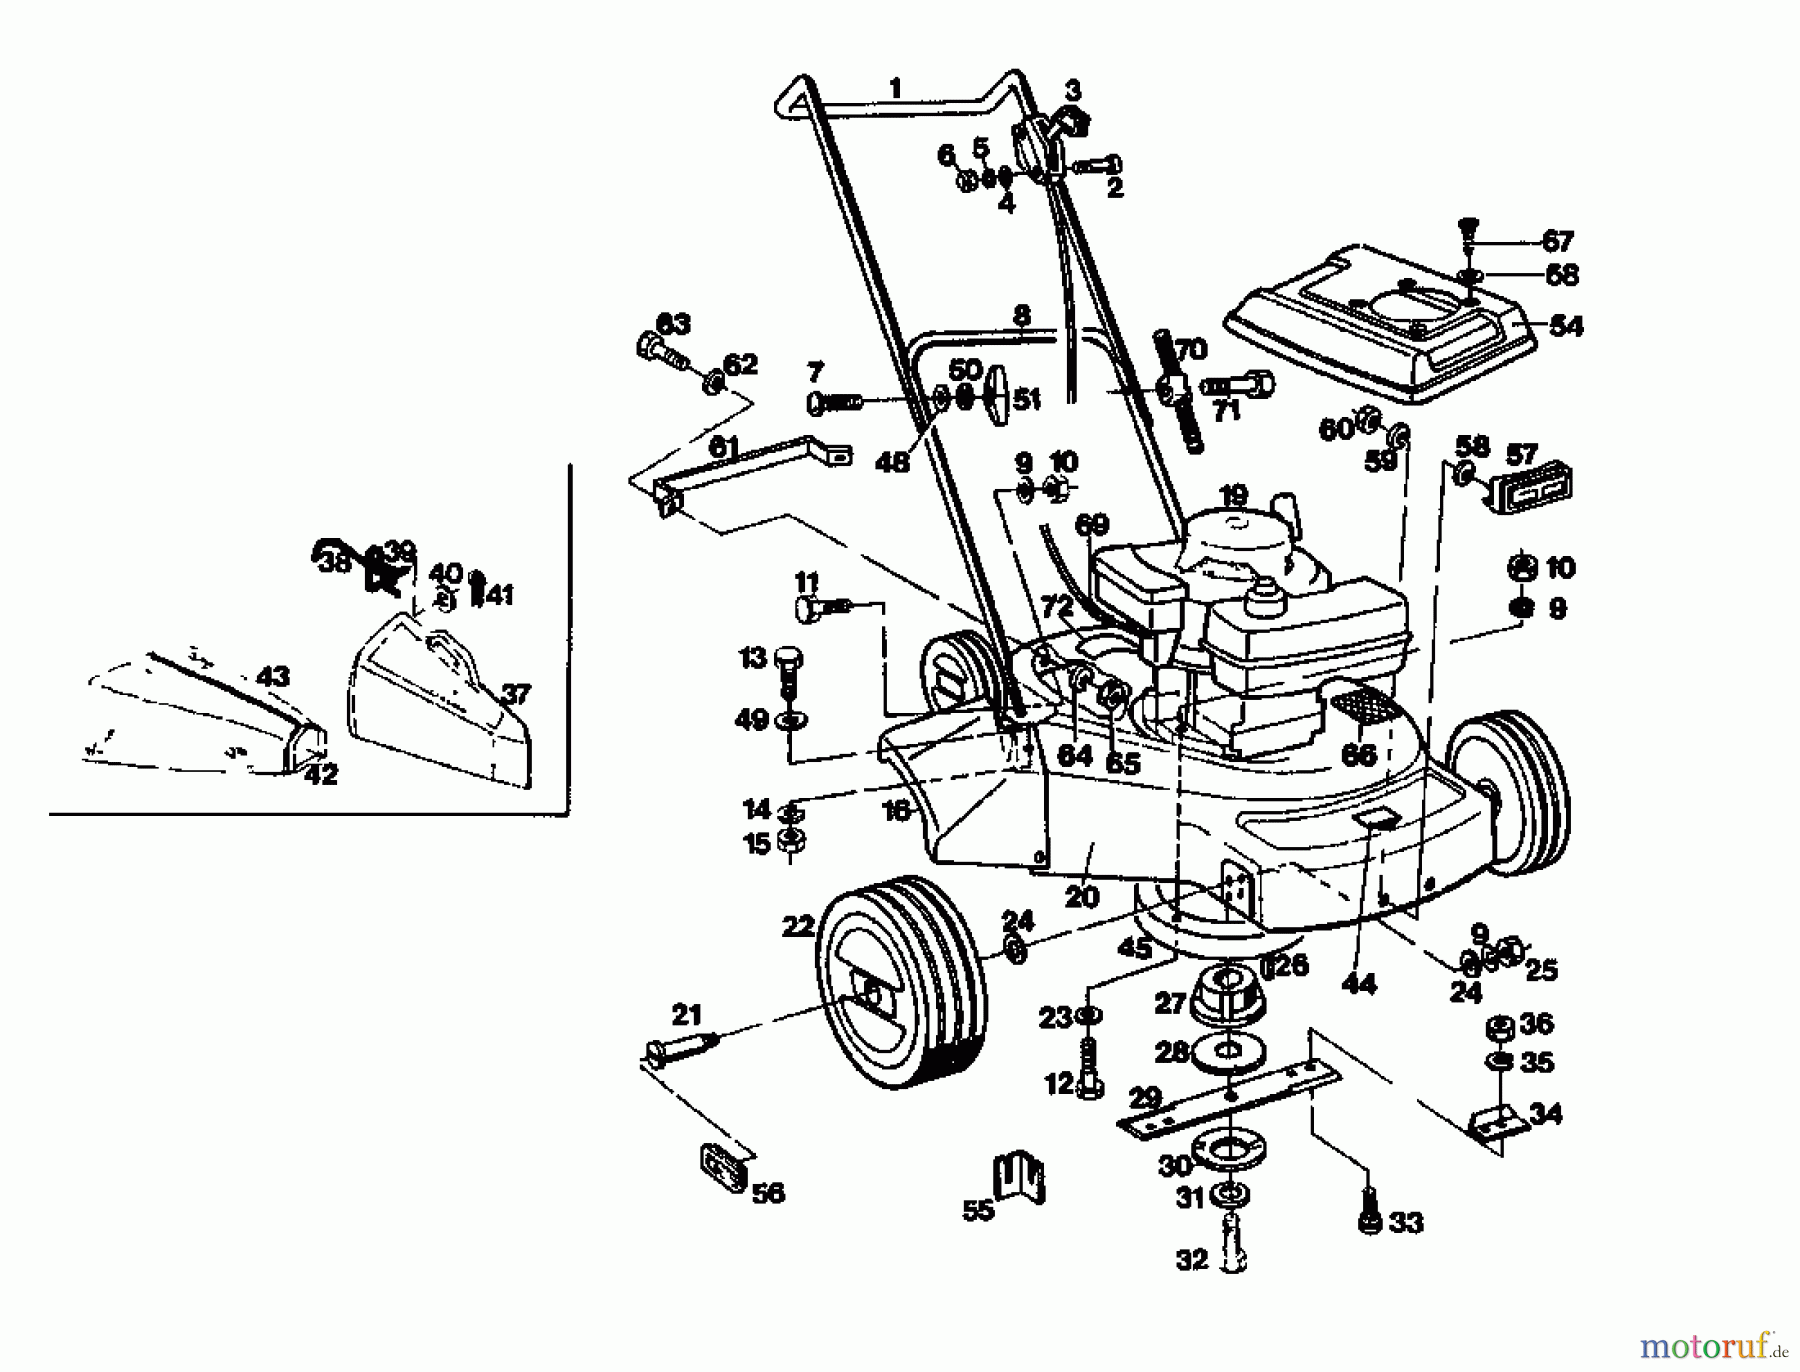  Gutbrod Petrol mower 135 B-BS-CH 02869.03  (1987) Basic machine